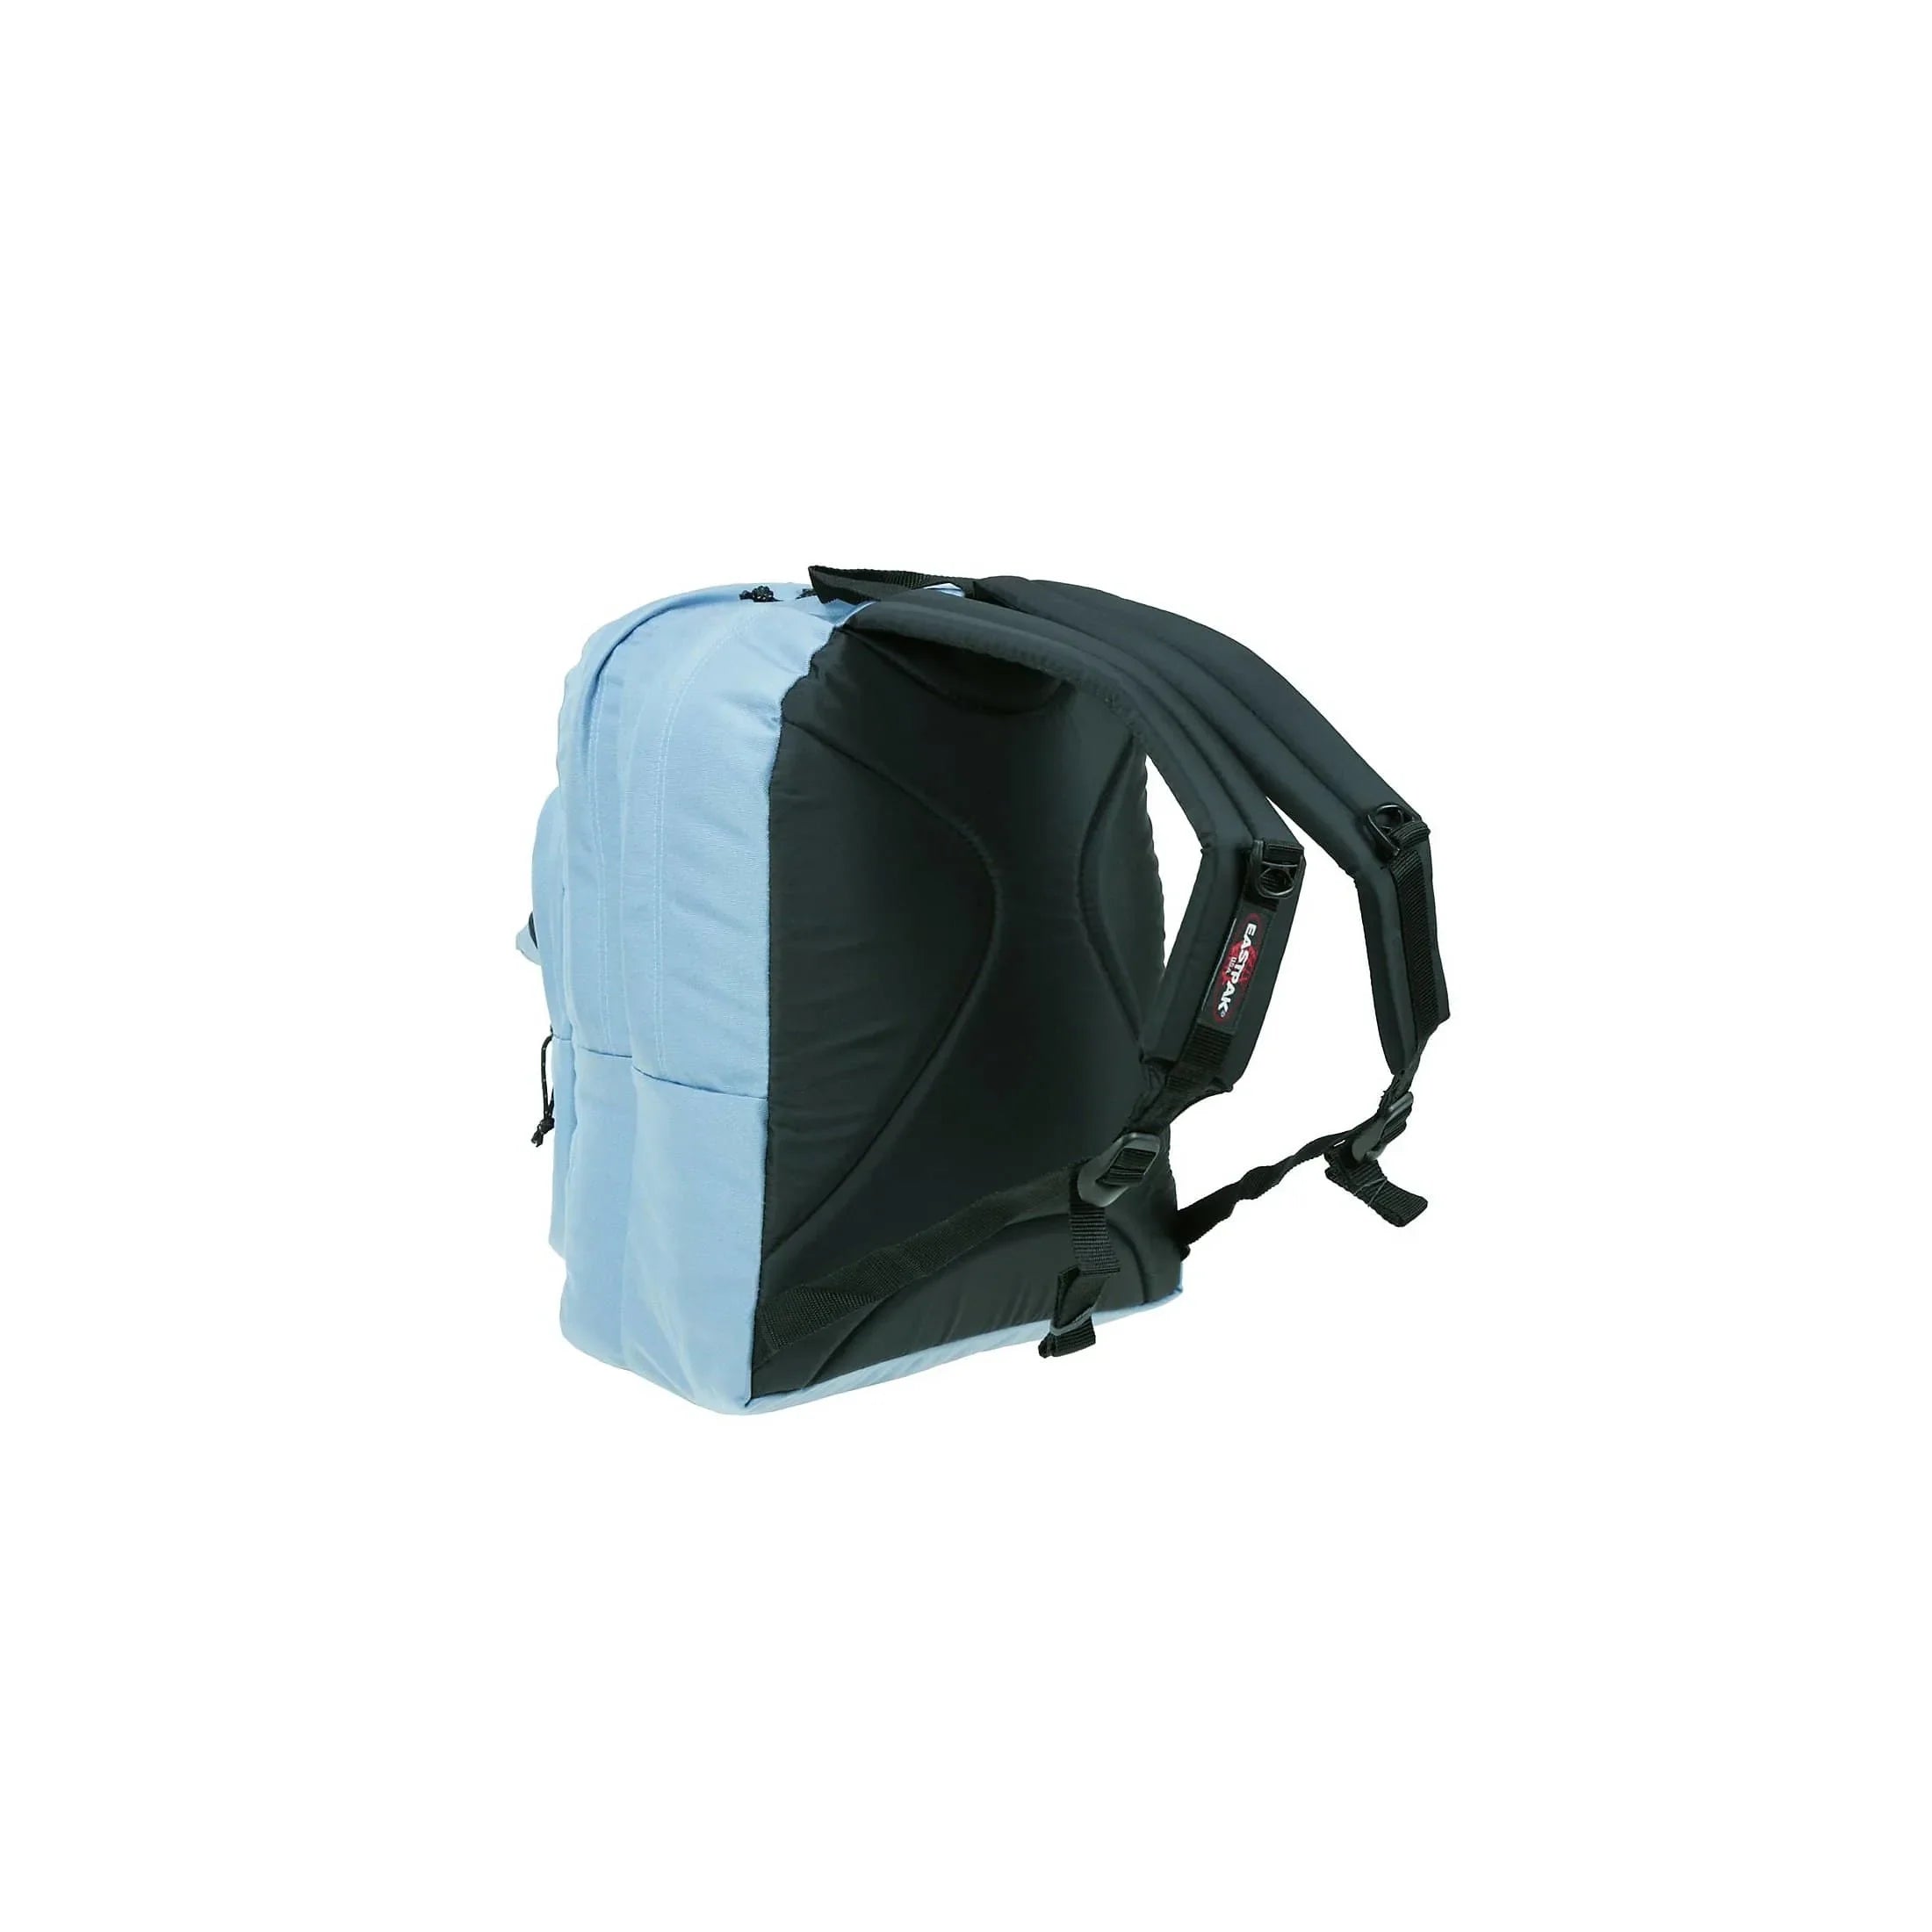 Eastpak Authentic Pinnacle leisure backpack 42 cm - Refleks Navy